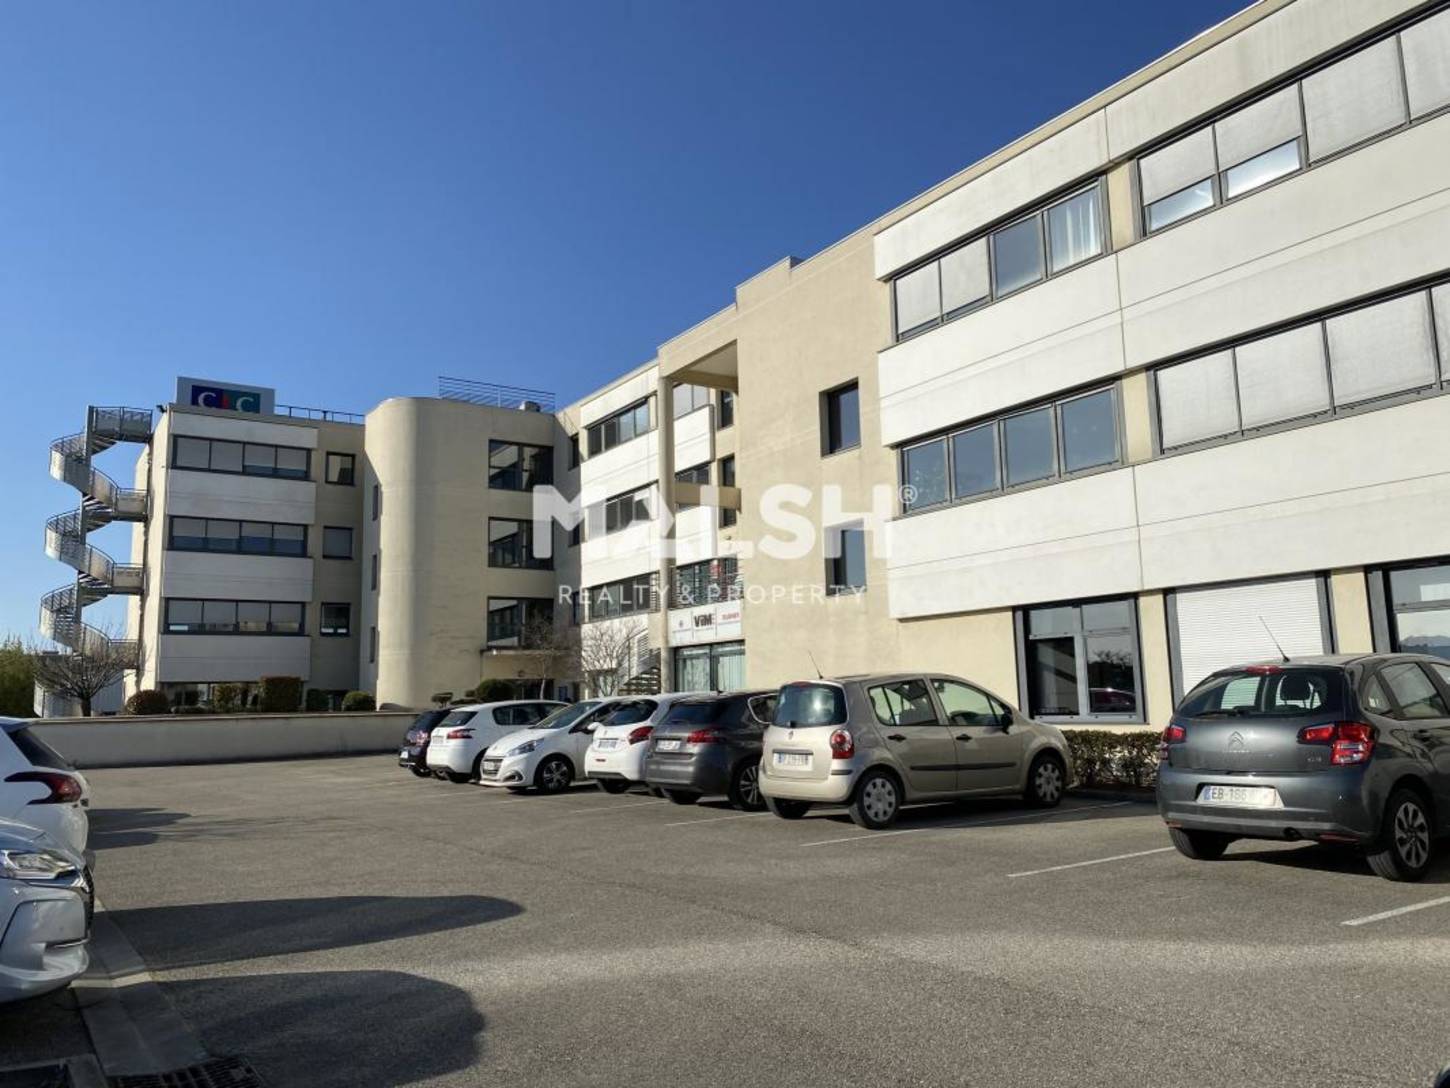 MALSH Realty & Property - Bureaux - Lyon EST (St Priest /Mi Plaine/ A43 / Eurexpo) - Chassieu - 2